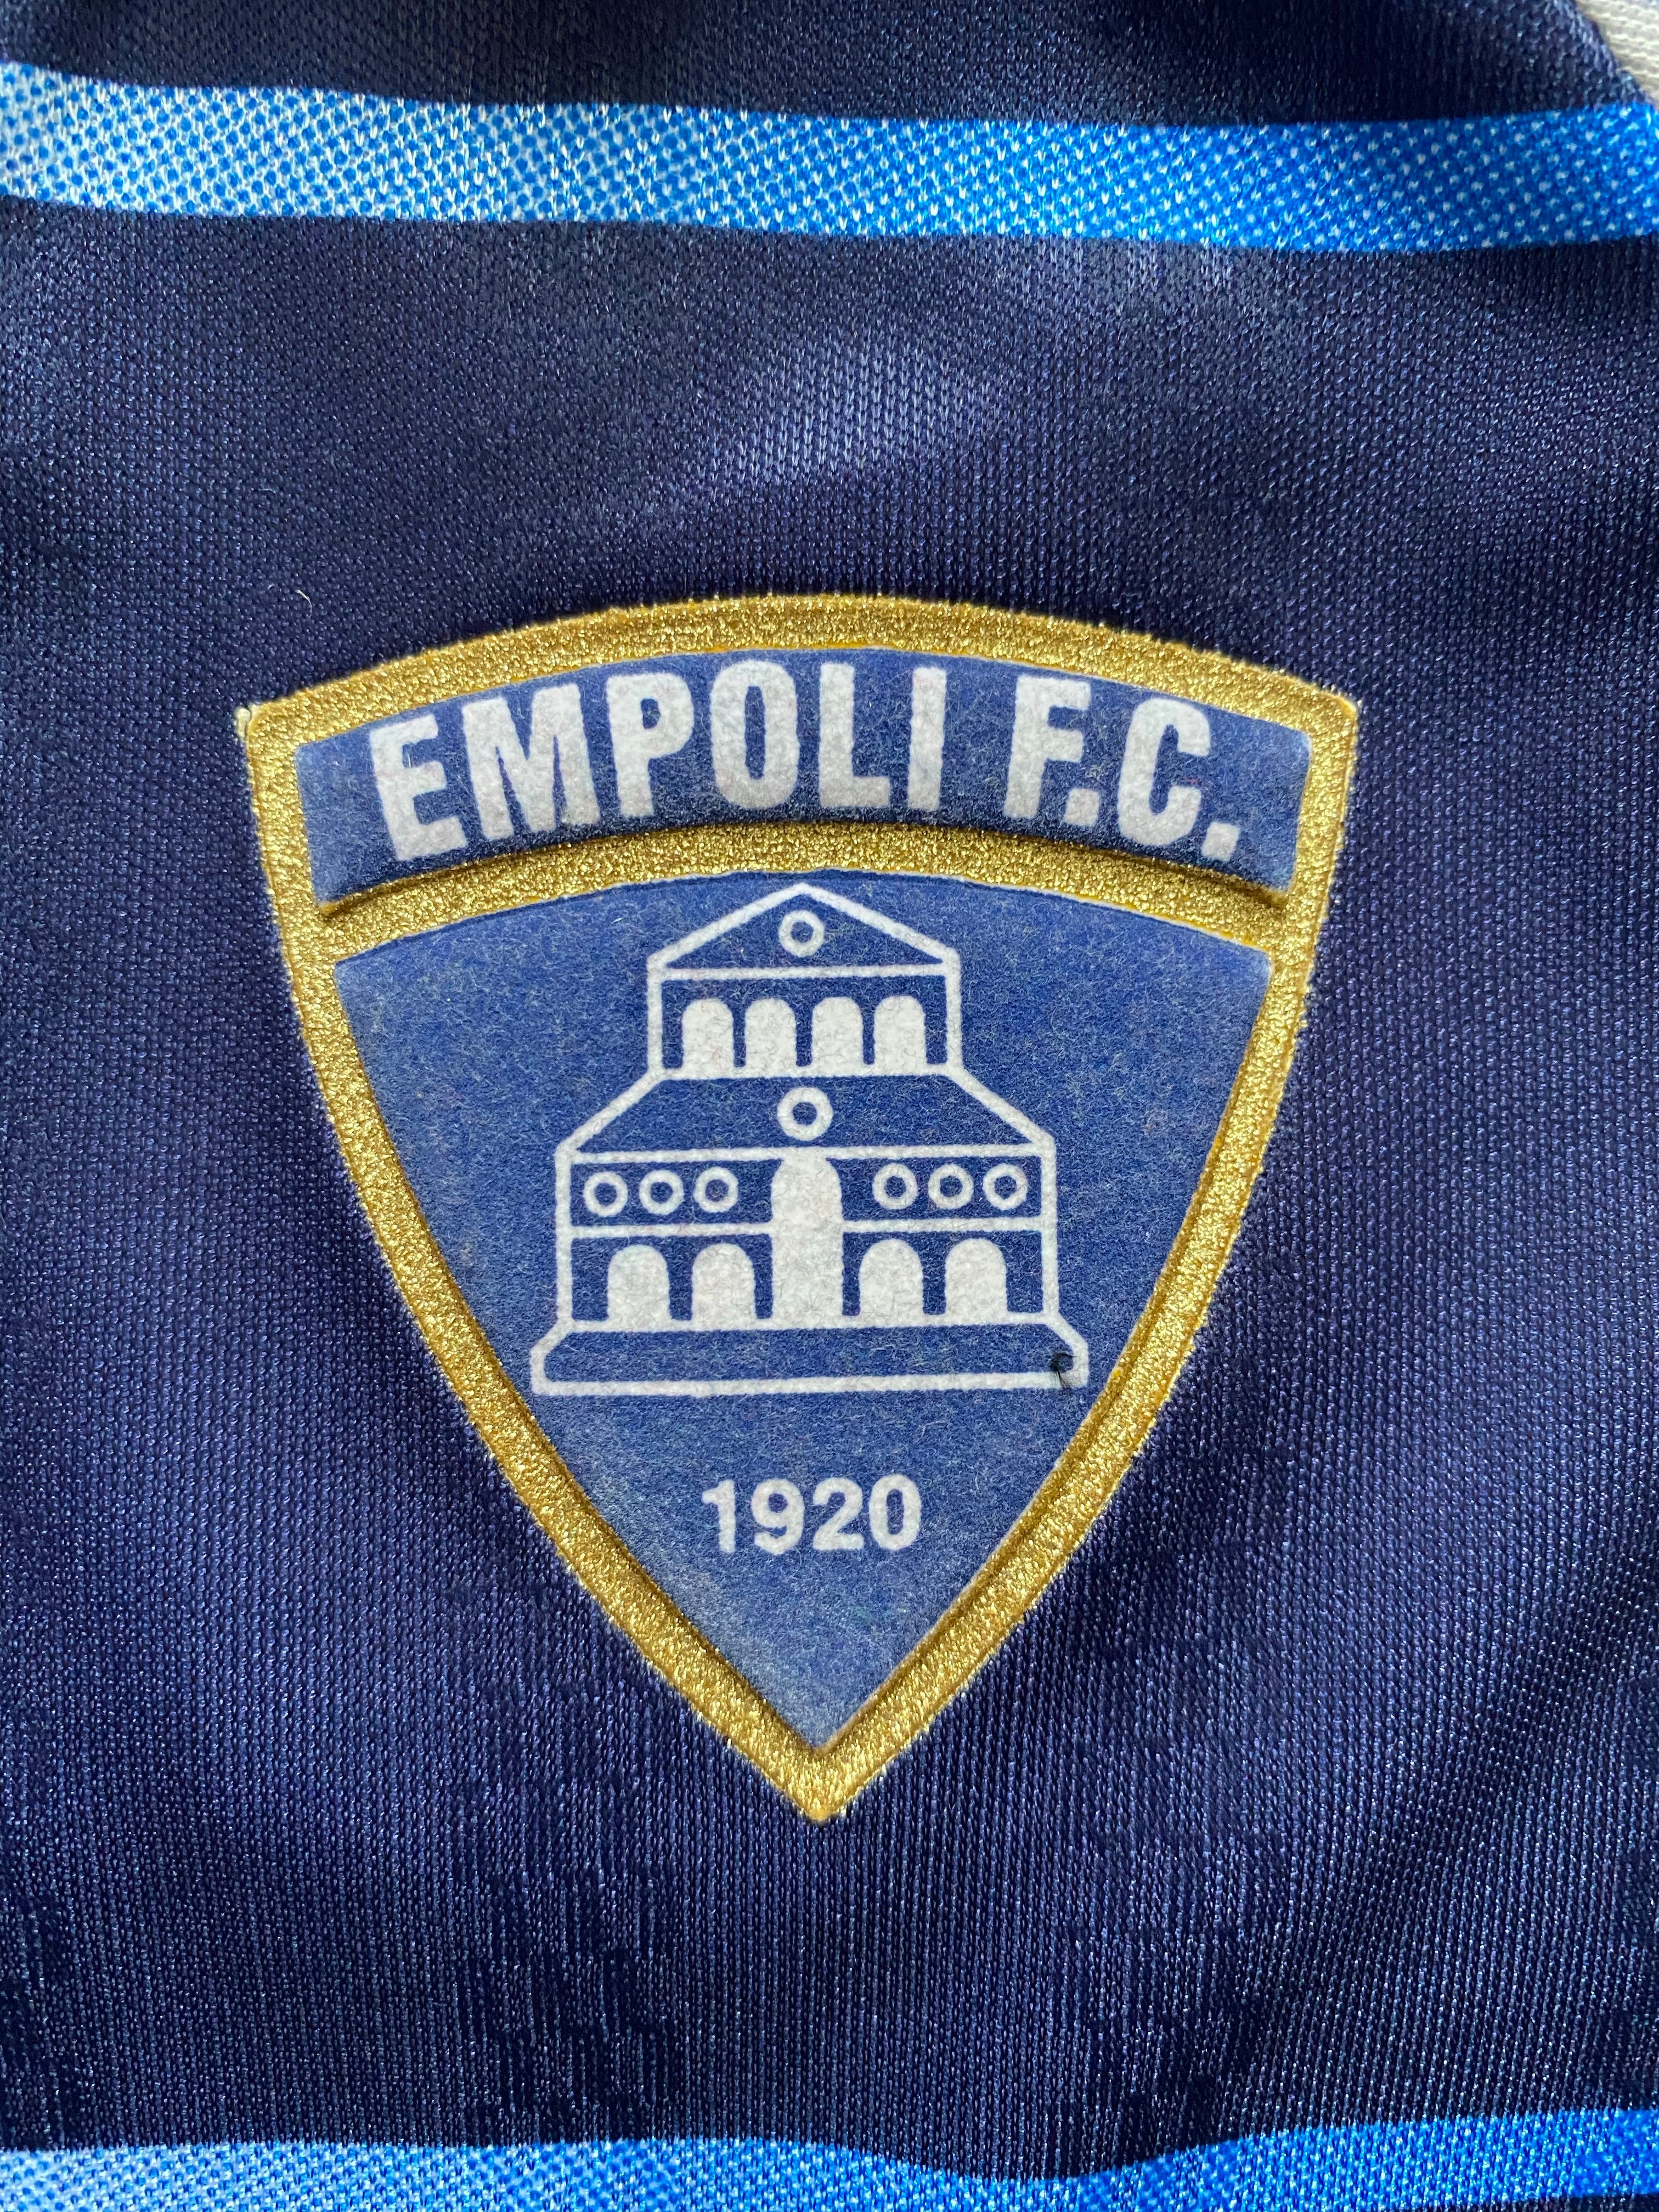 2000/01 Camiseta local del Empoli (L) 9/10